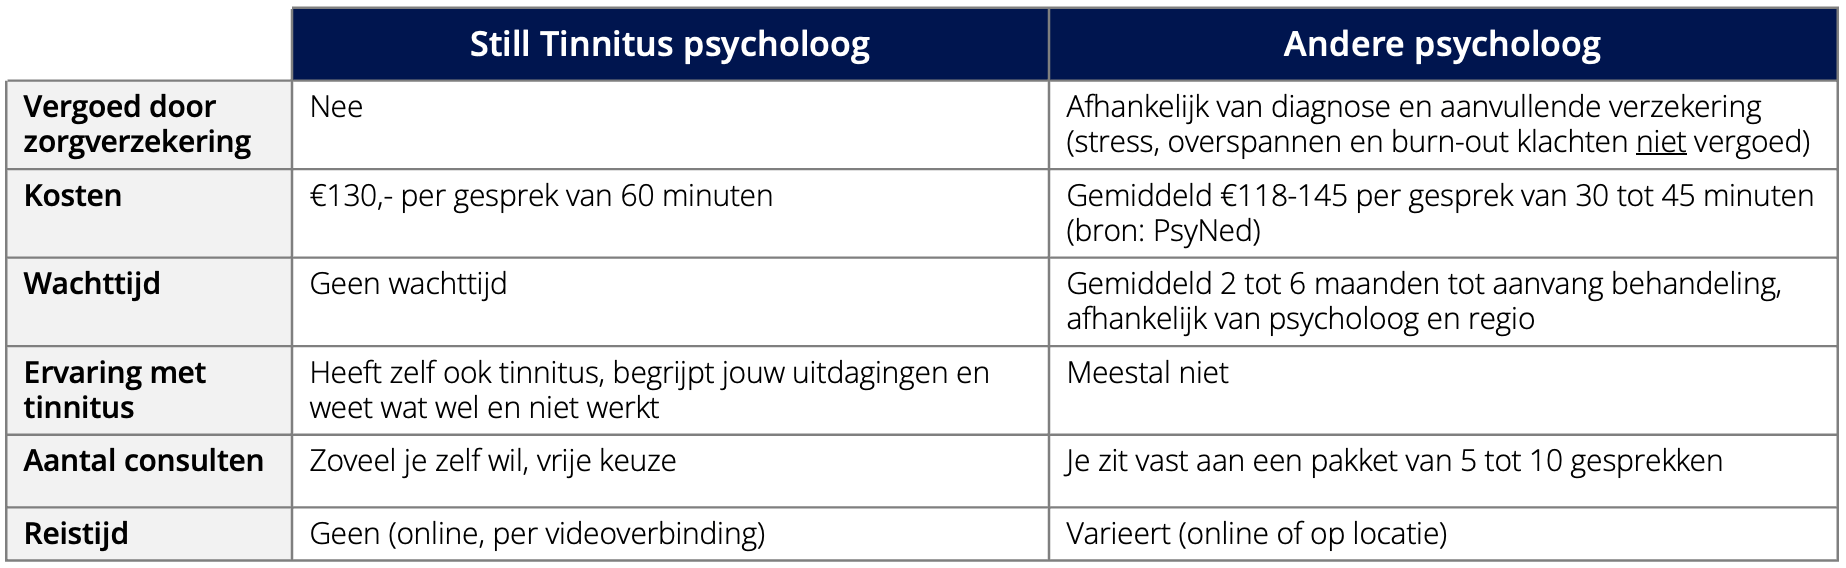 Tabel met vergelijking van still tinnitus psychologen met andere psychologen